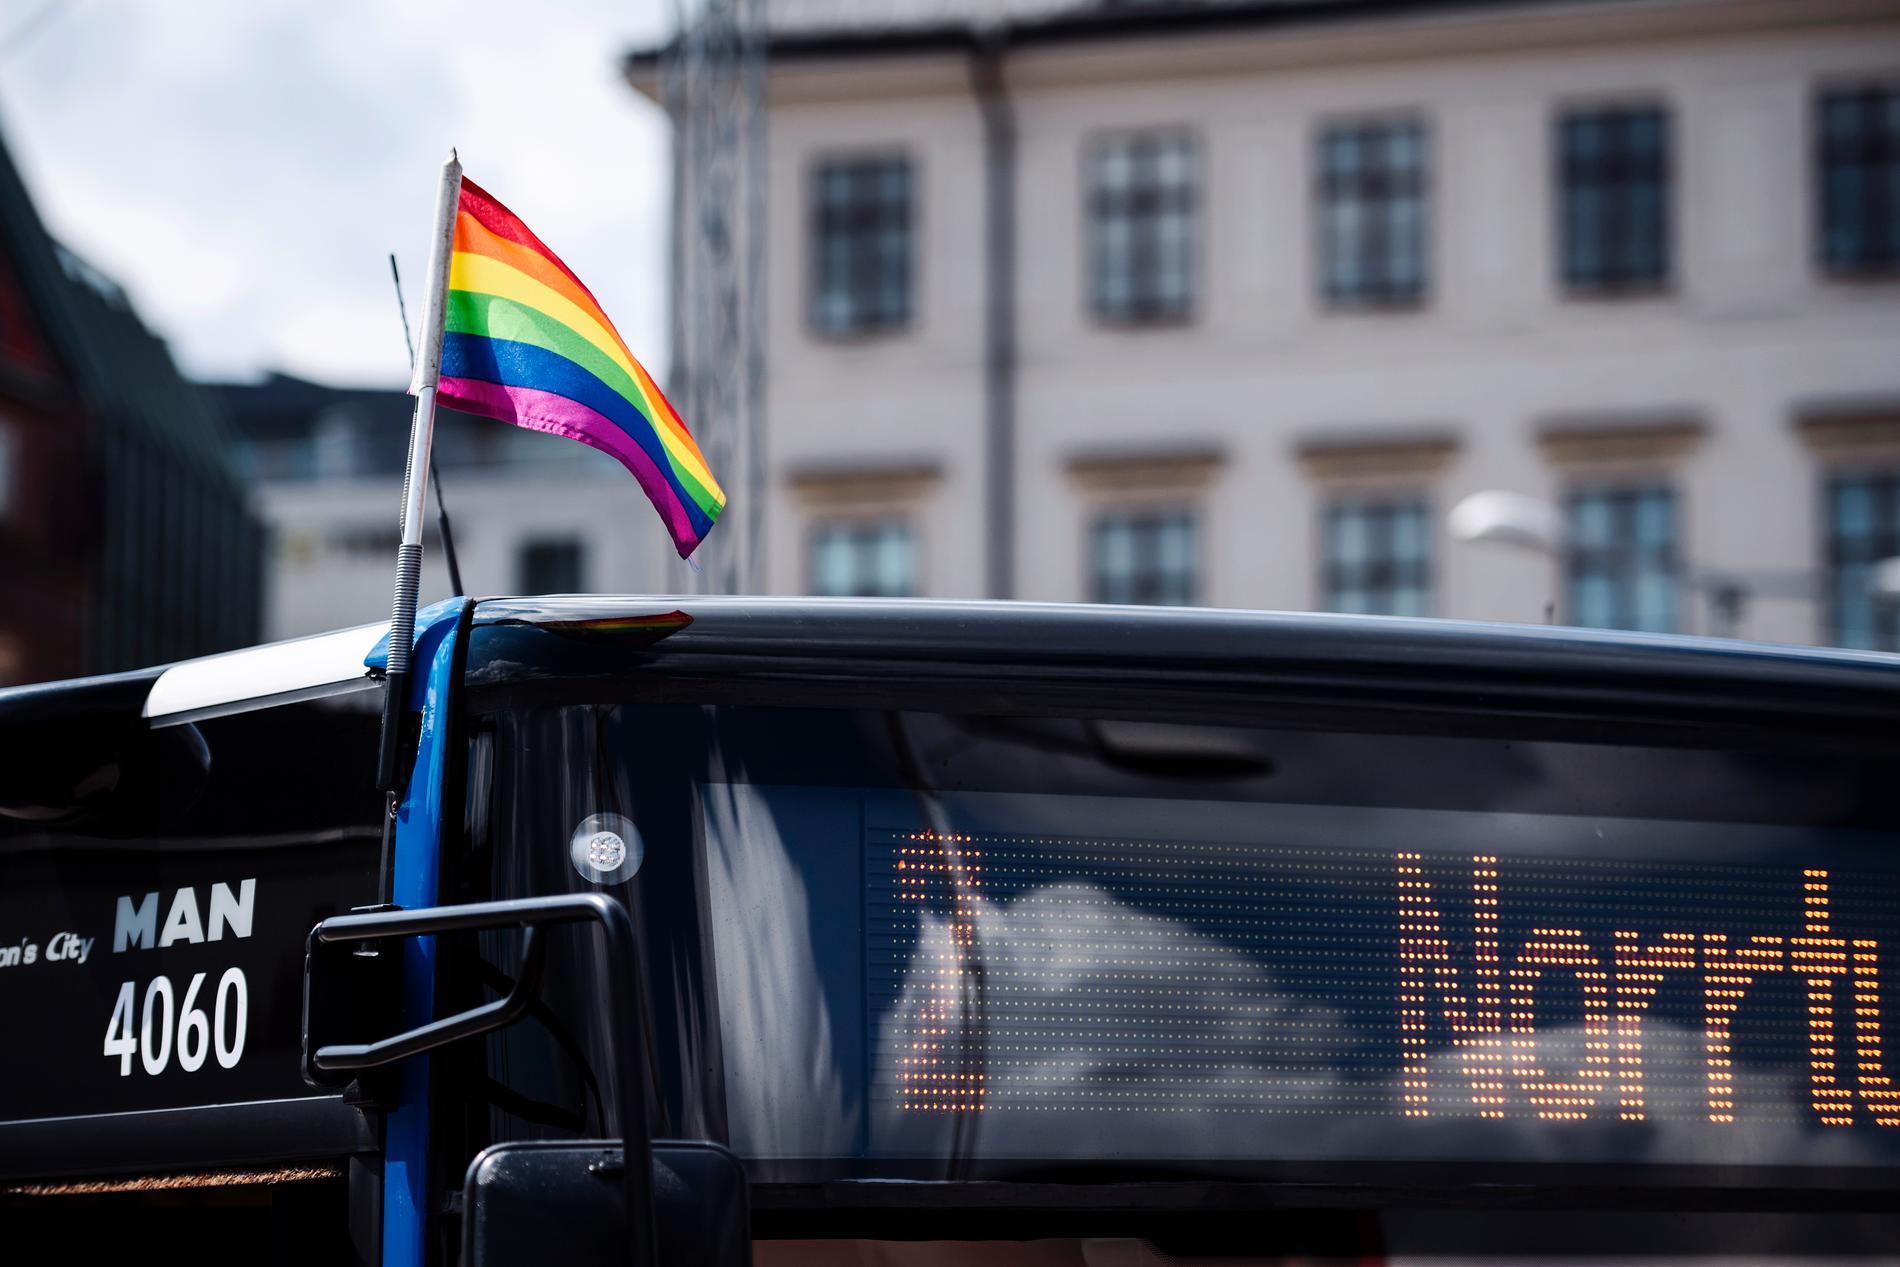 Pride-utsmyckning i Stockholm inför Europride 2018 – här en buss med prideflagga.